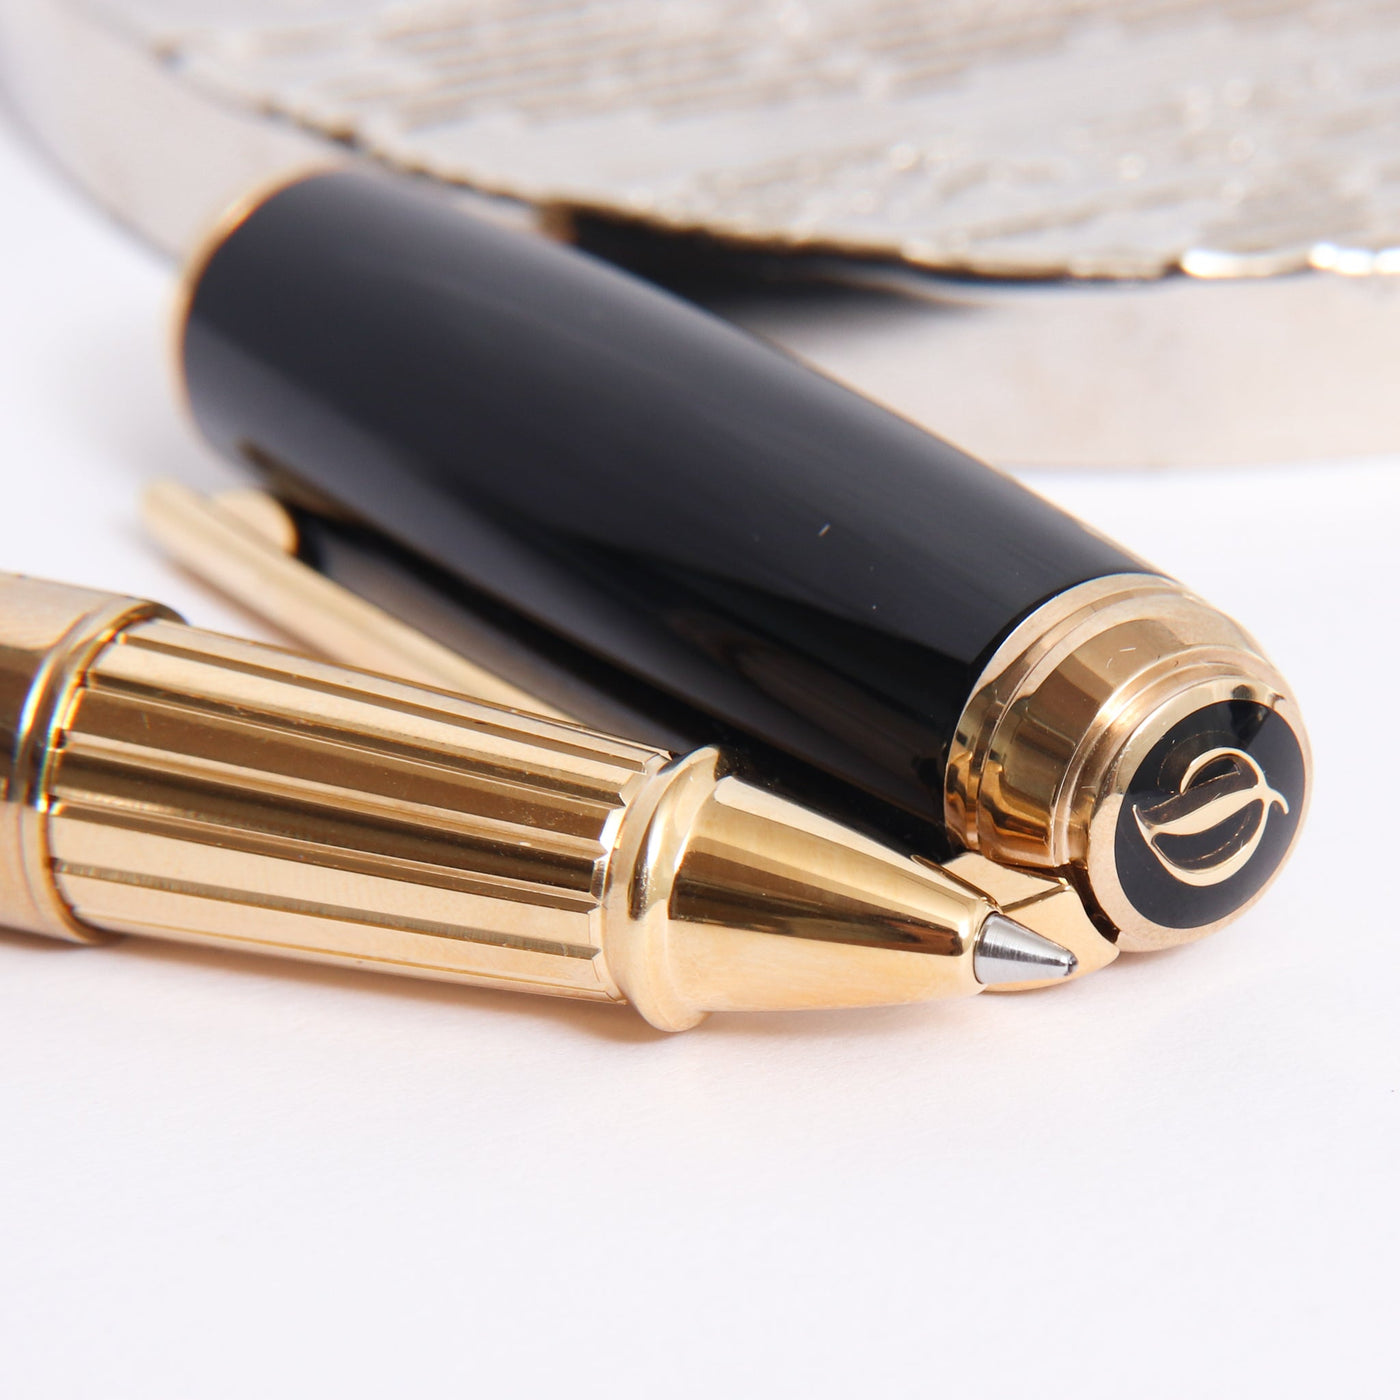 ST Dupont Line D Large Black & Gold Rollerball Pen Tip Details